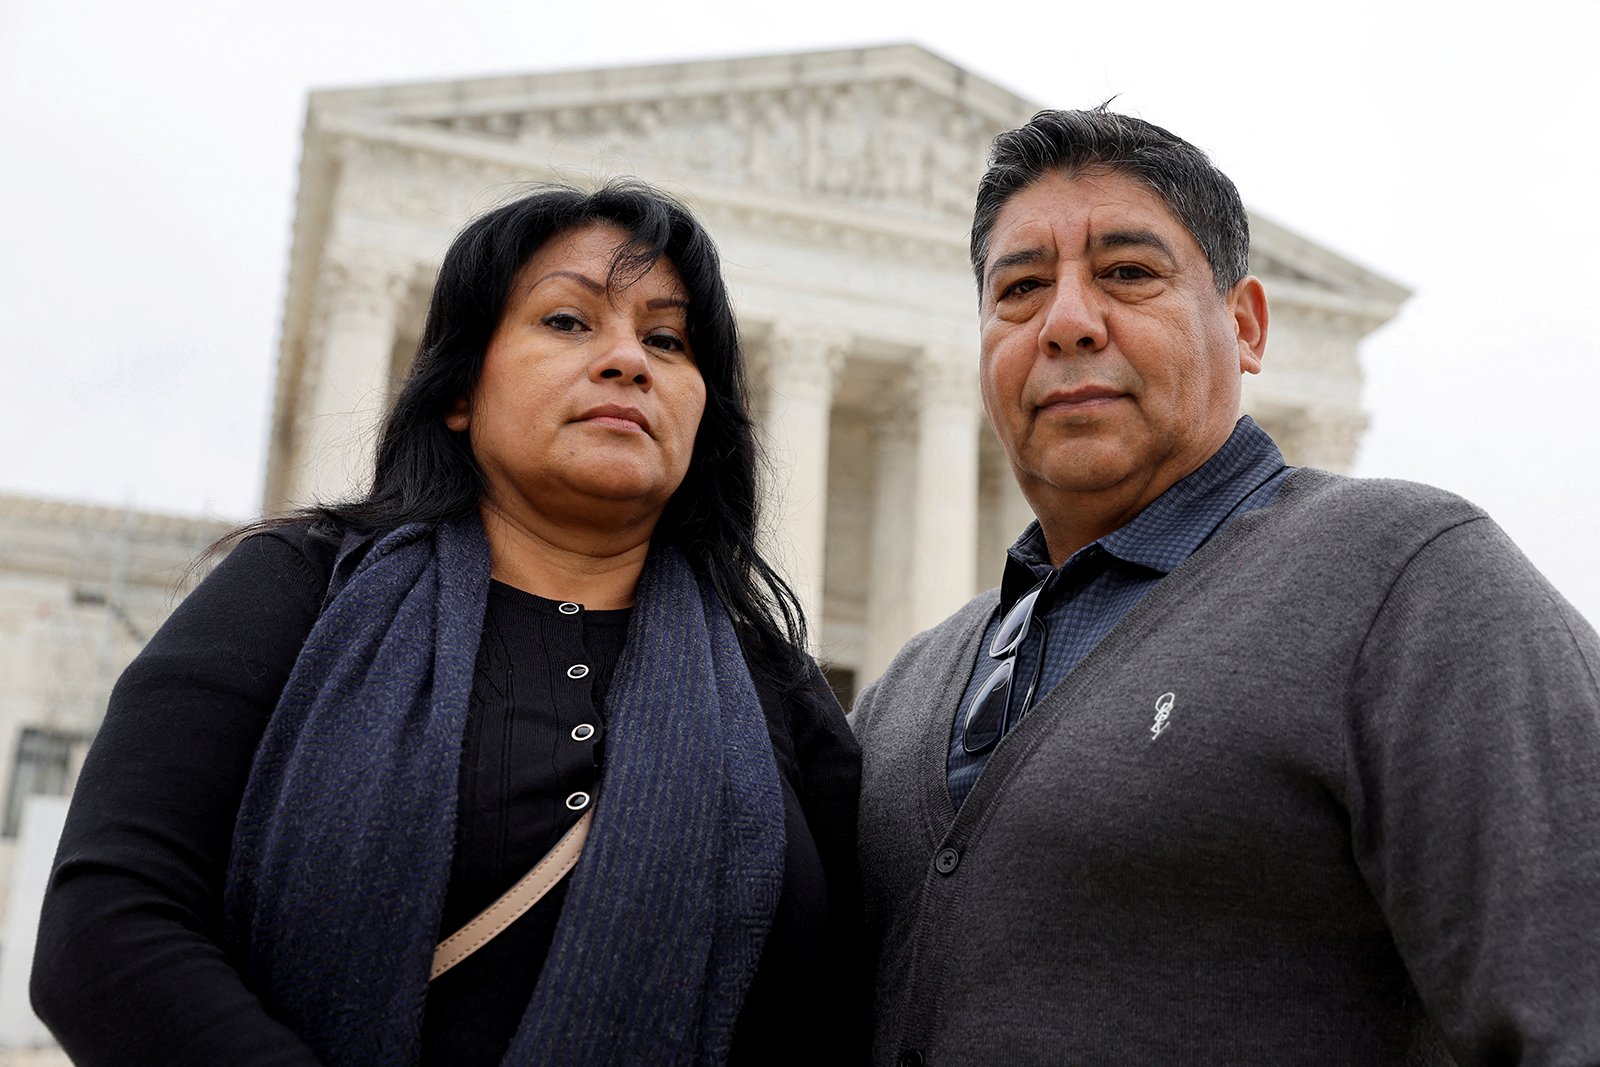 بياتريس غونزاليس وخوسيه هيرنانديز ، والدة نوهيمي غونزاليس وزوجها ، الذي قُتل بالرصاص في عام 2015 على أيدي متشددين إسلاميين في باريس ، شوهدوا خارج المحكمة العليا الأمريكية في واشنطن ، في 16 فبراير.